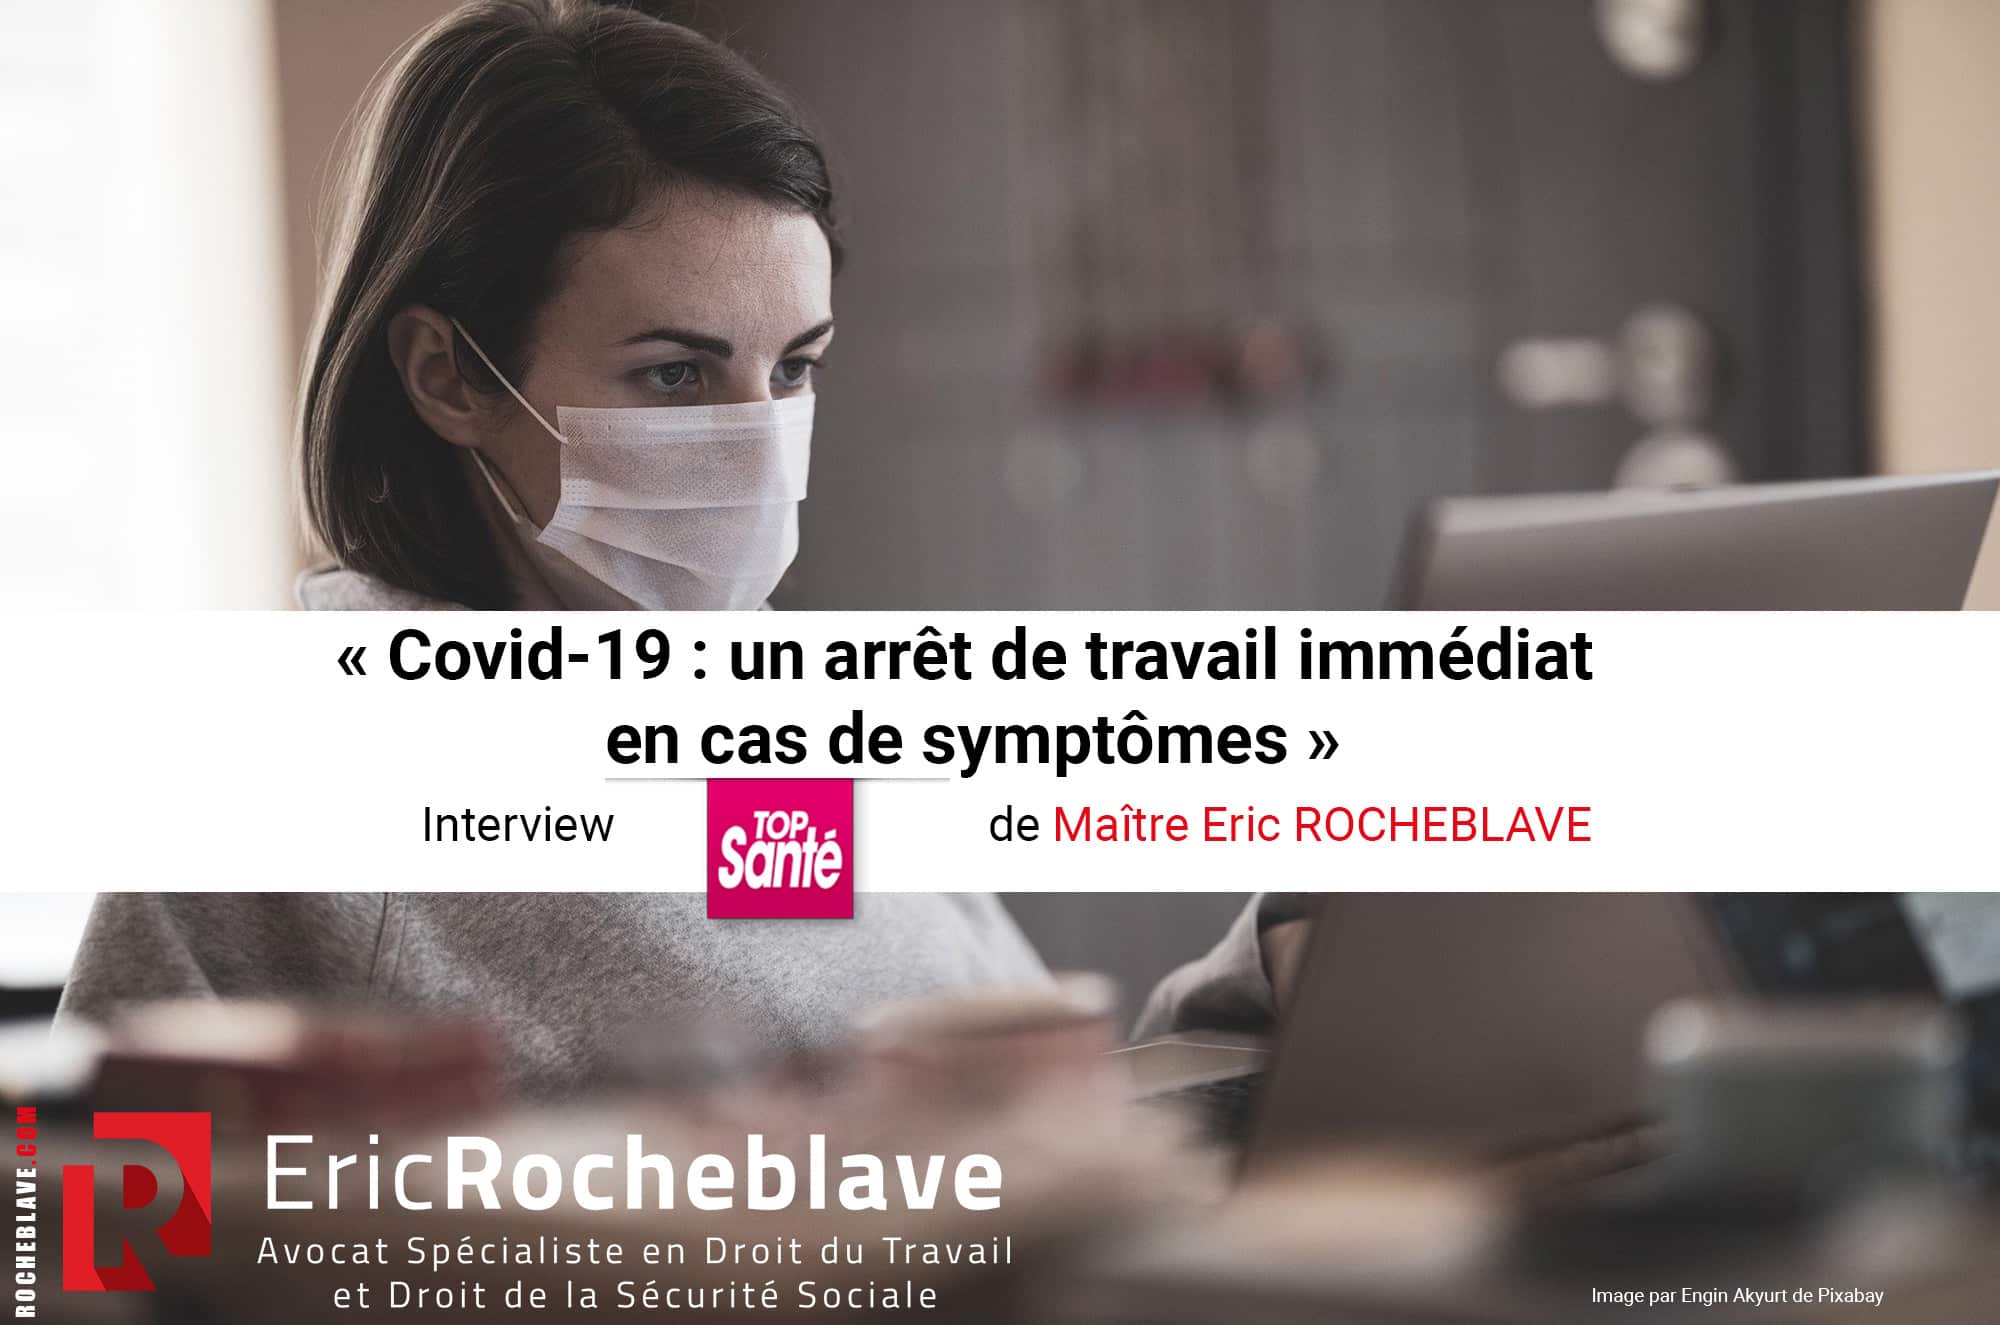 « Covid-19 : un arrêt de travail immédiat en cas de symptômes » Interview TOP Santé de Maître Eric ROCHEBLAVE